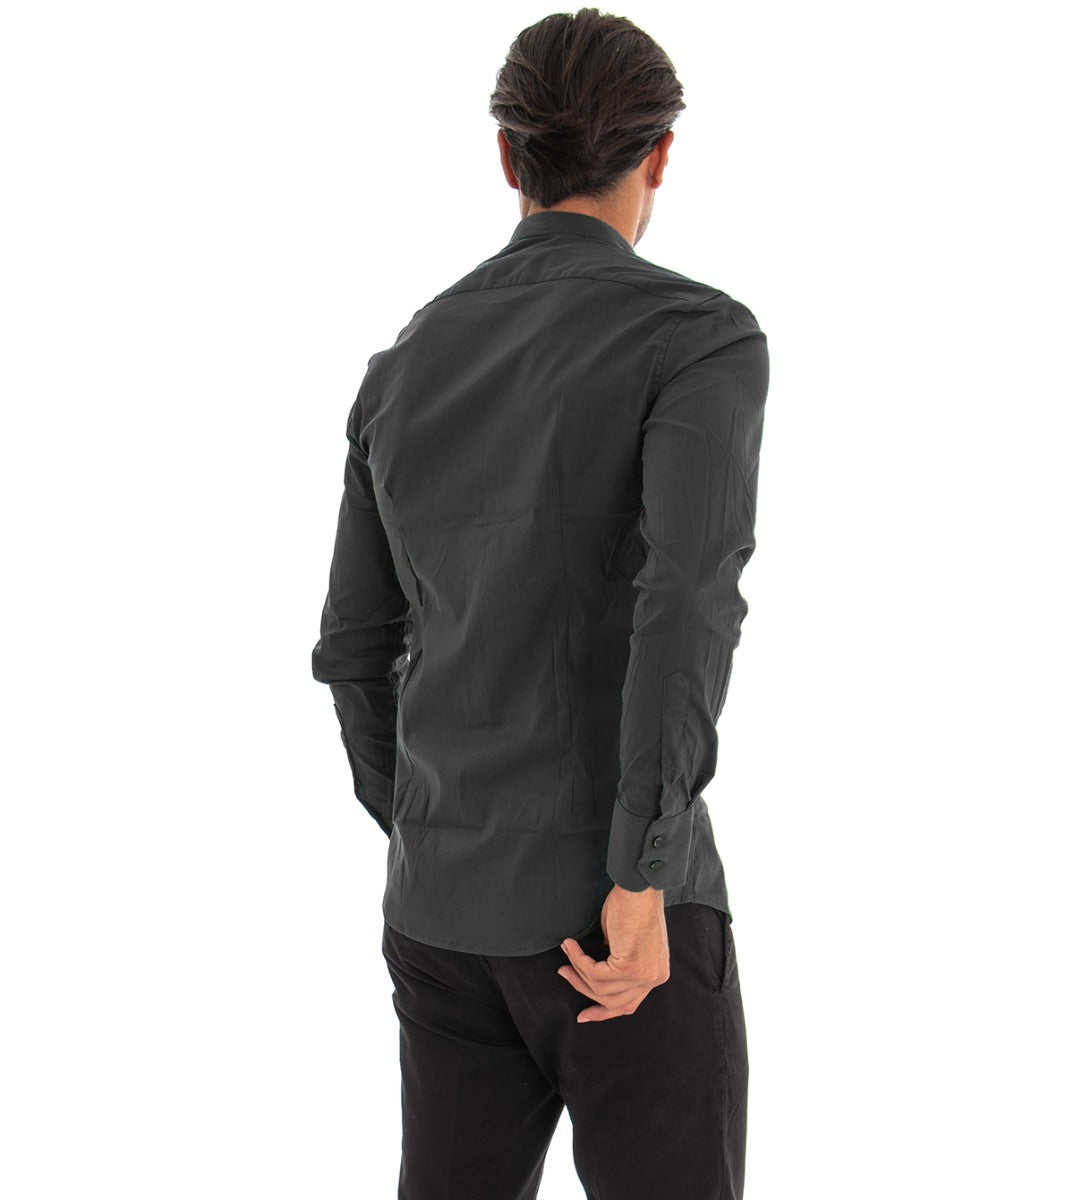 Camicia Uomo Collo Coreano Manica Lunga Slim Fit Basic Casual Cotone Nero GIOSAL-C1820A